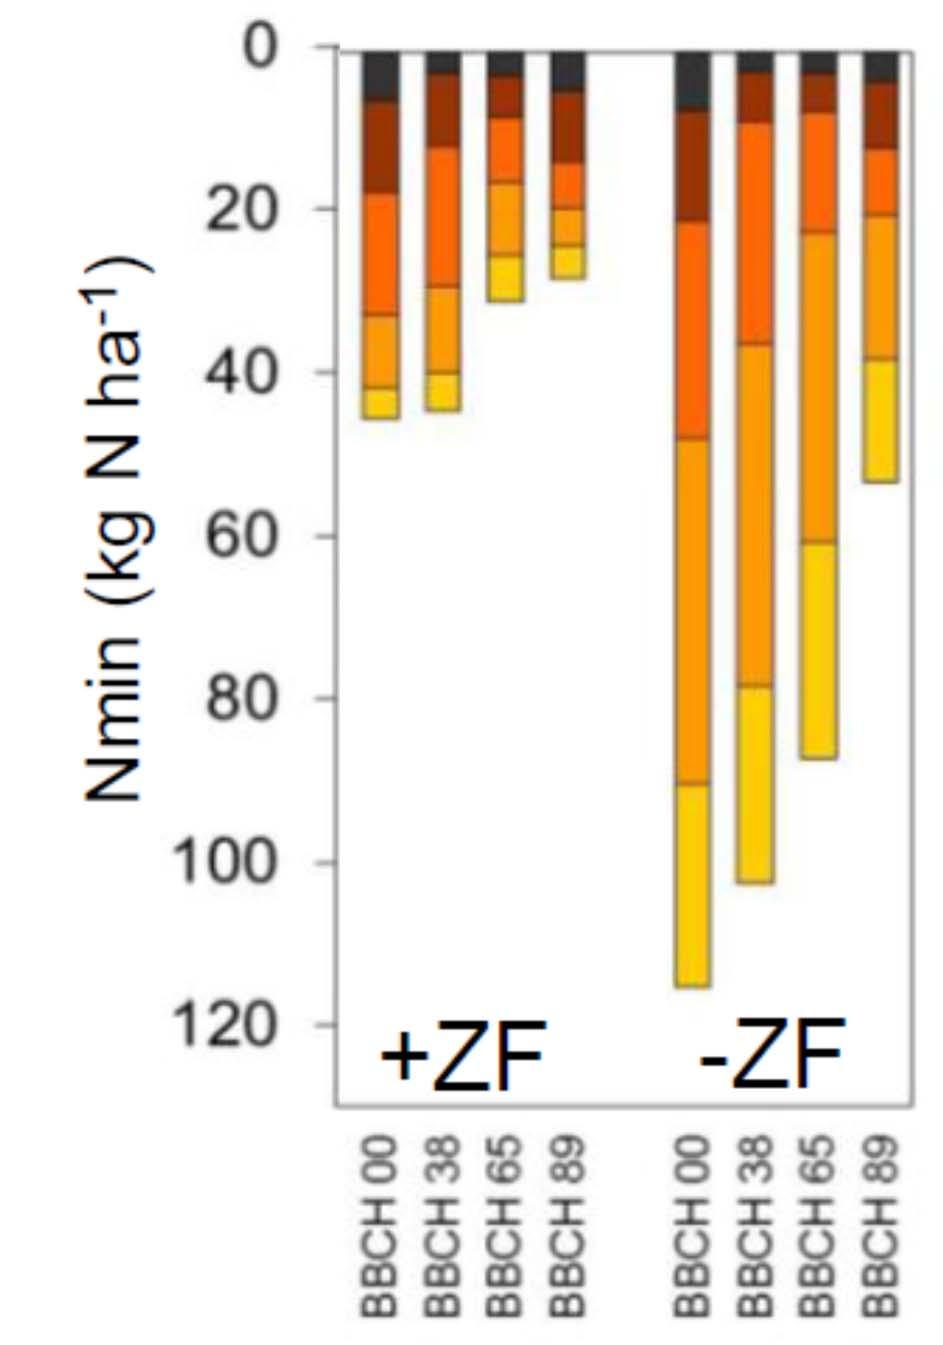 Abb. 25: Nmin-Vorrat im Boden unter Ackerbohne nach Zwischenfruchtanbau (+ZF) und